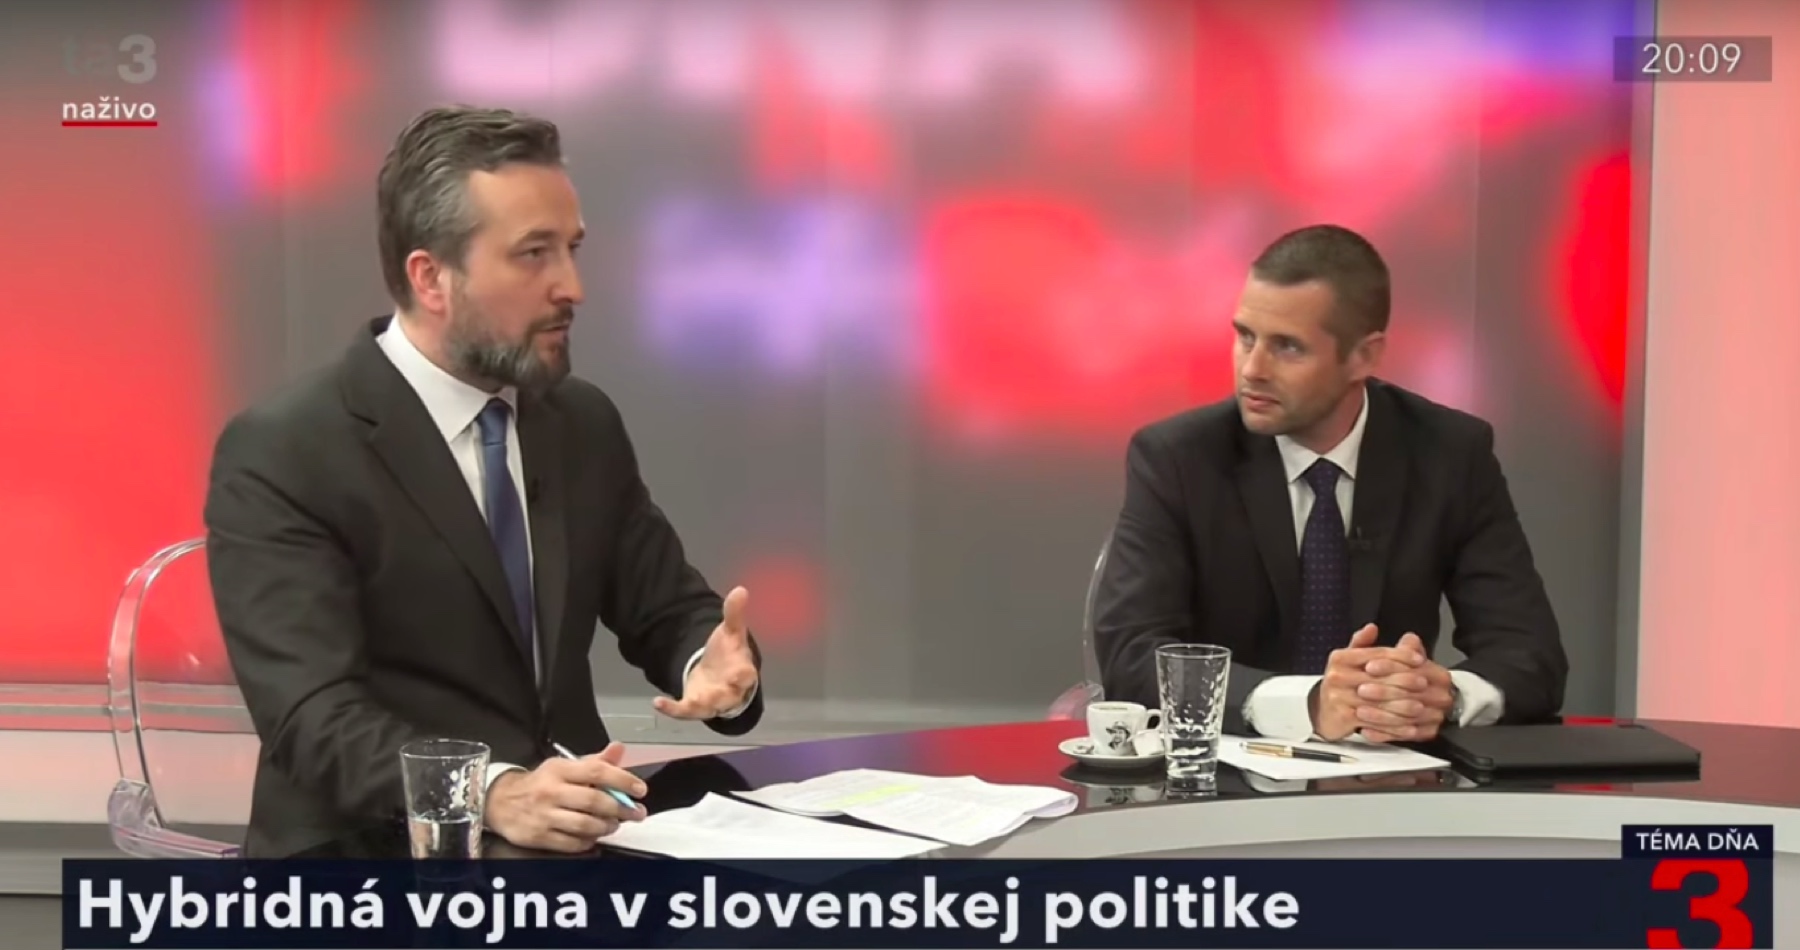 VIDEO: Neoliberálne úderky k nám pozývajú NATO, aby spacifikovalo Slovákov, komentuje Blaha najnovšie aktivity protištátnych aktivistov, ktorí sa infiltrovali do štruktúr štátu, aby ho rozložili, odstránením opozície zlikvidovali demokraciu a nastolili v štáte totalitu 